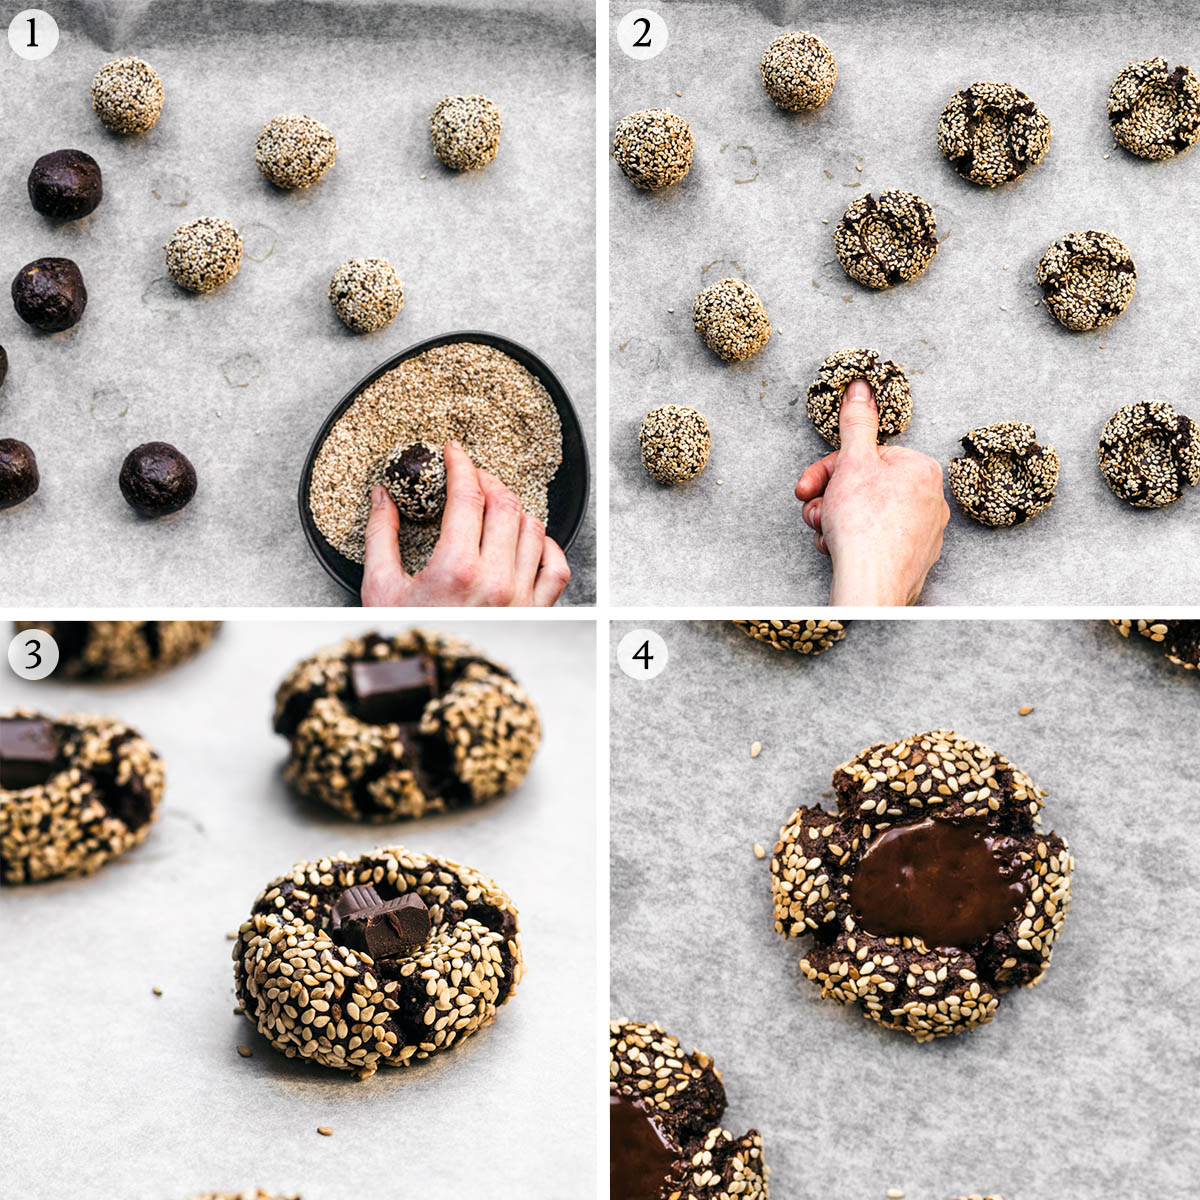 Chocolate tahini cookies steps 1 to 4.